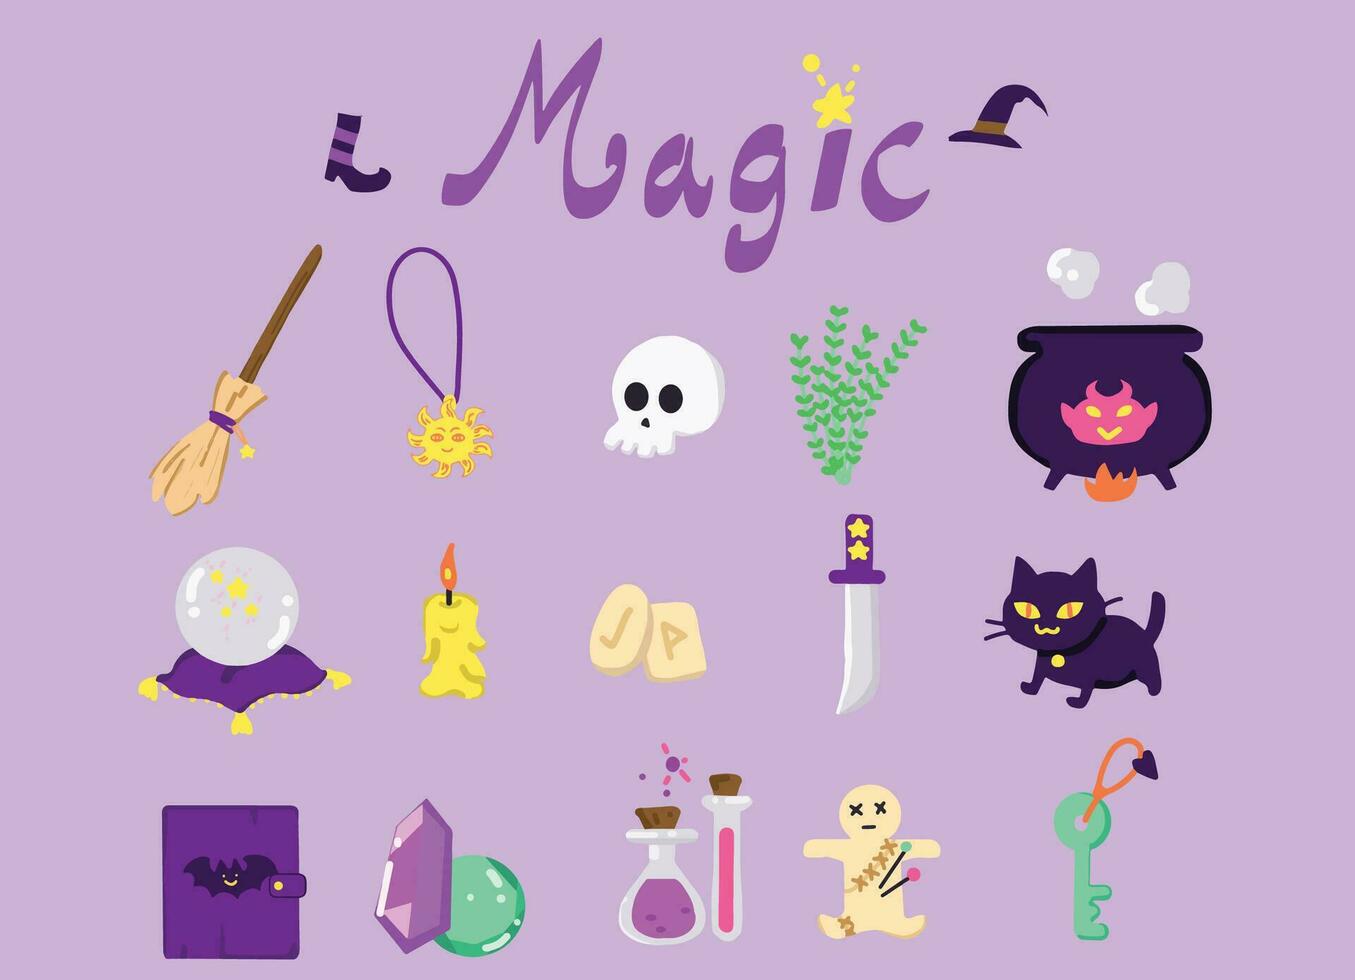 witch-item-object-magic.icon uppsättning freehand digital målning med skuggning. vektor